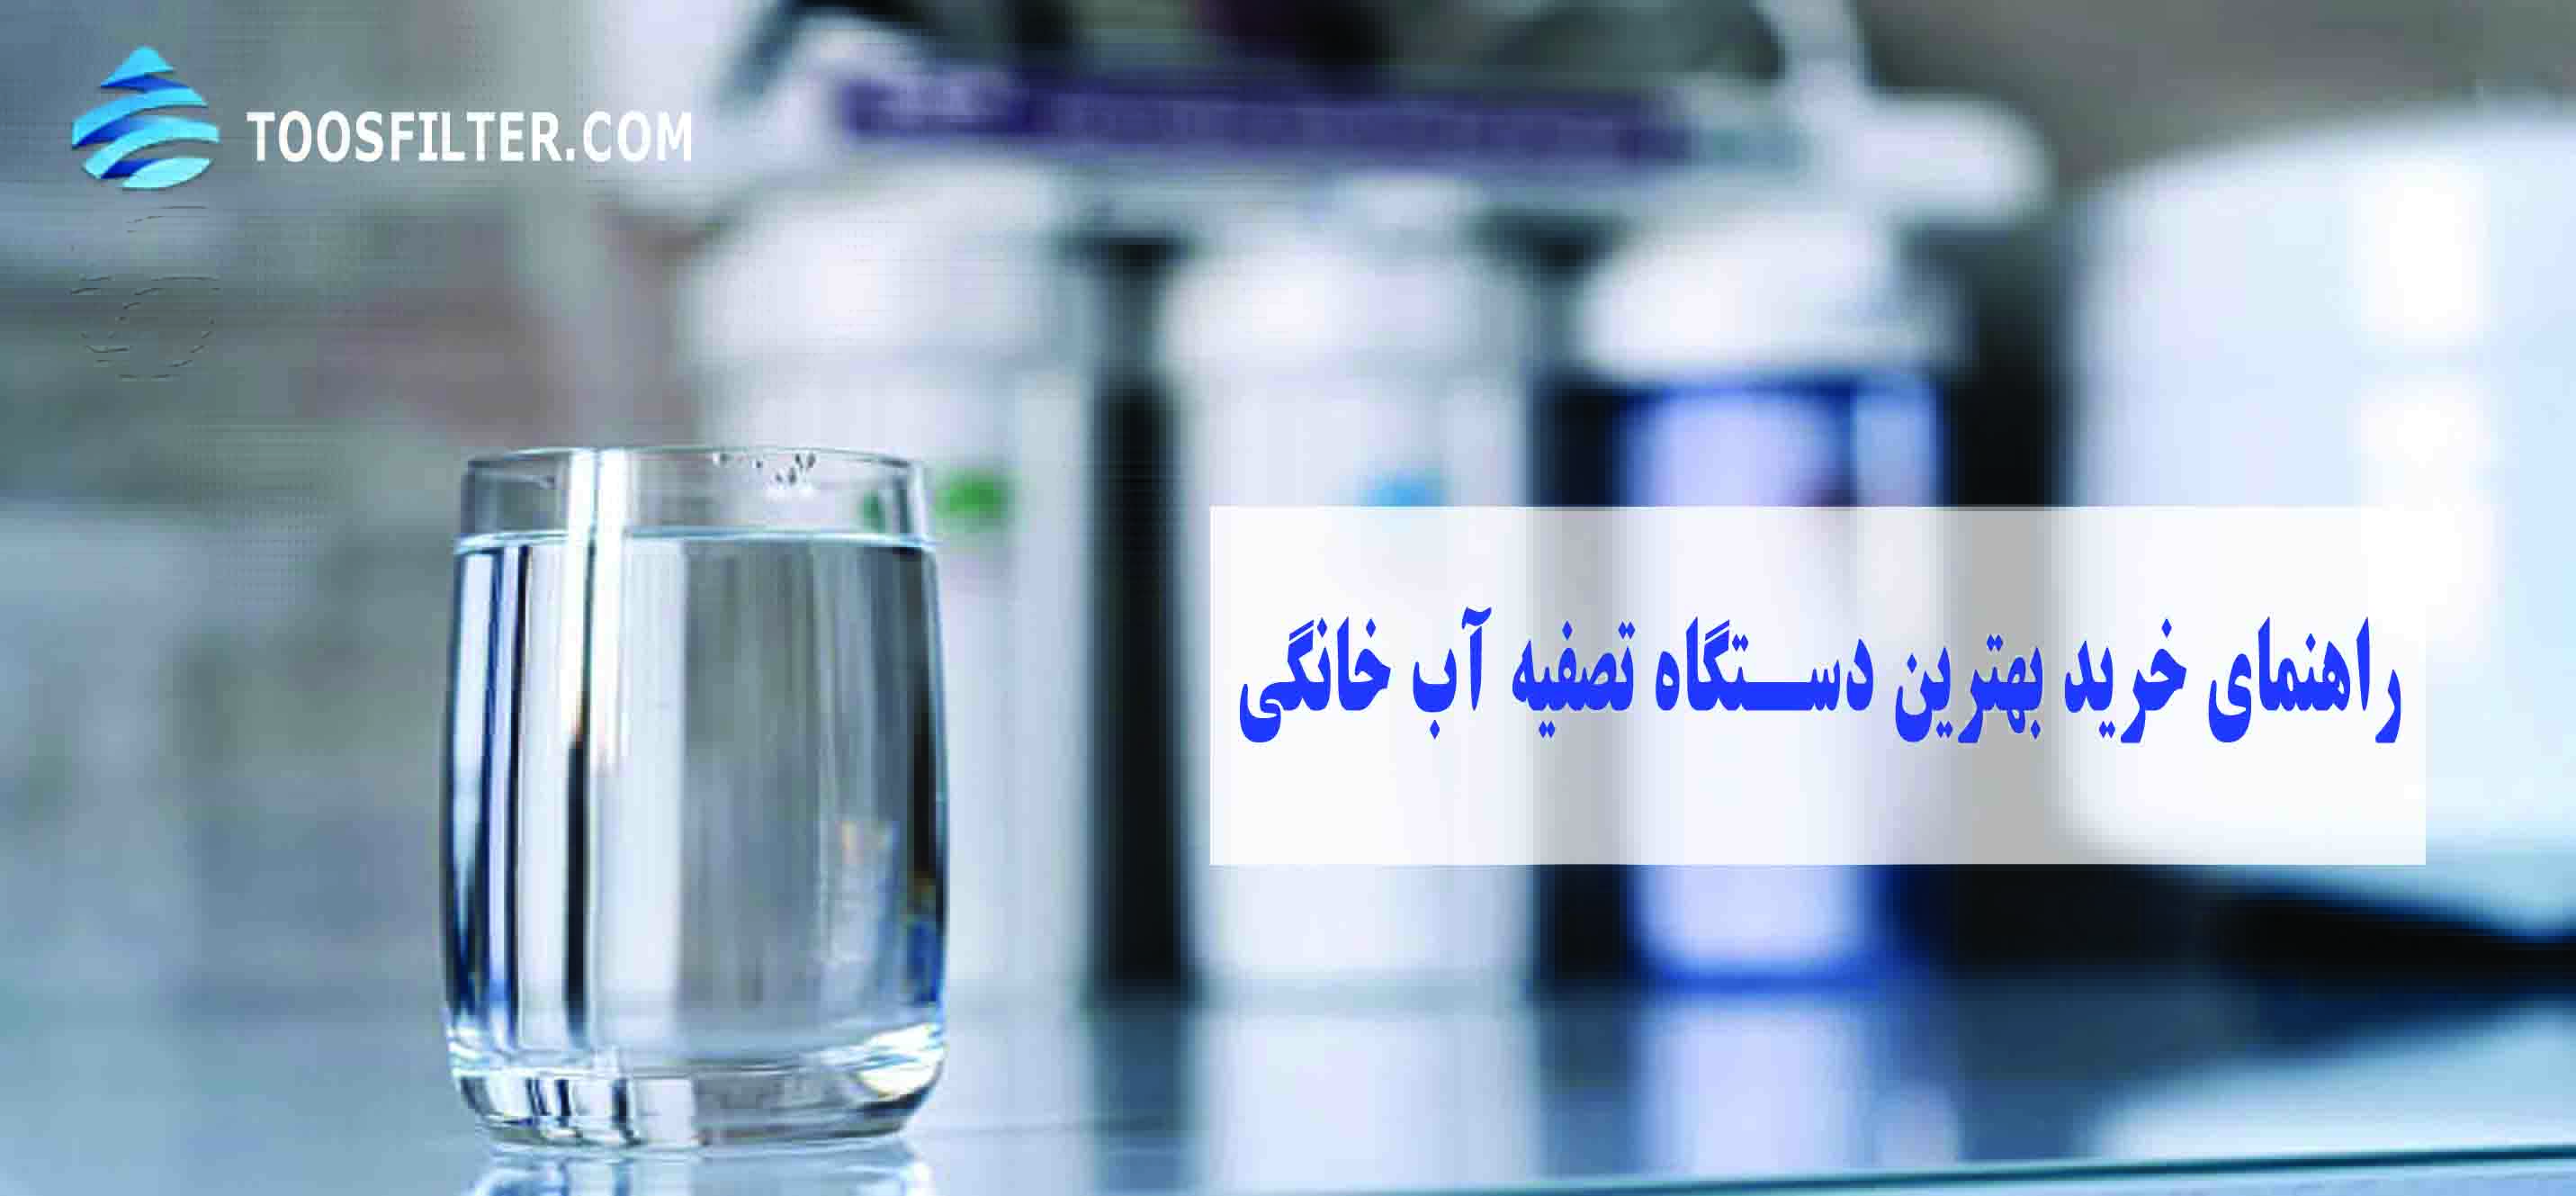 تصفیه آب ایرانی - راهنمای خرید بهترین دستگاه RO خانگی